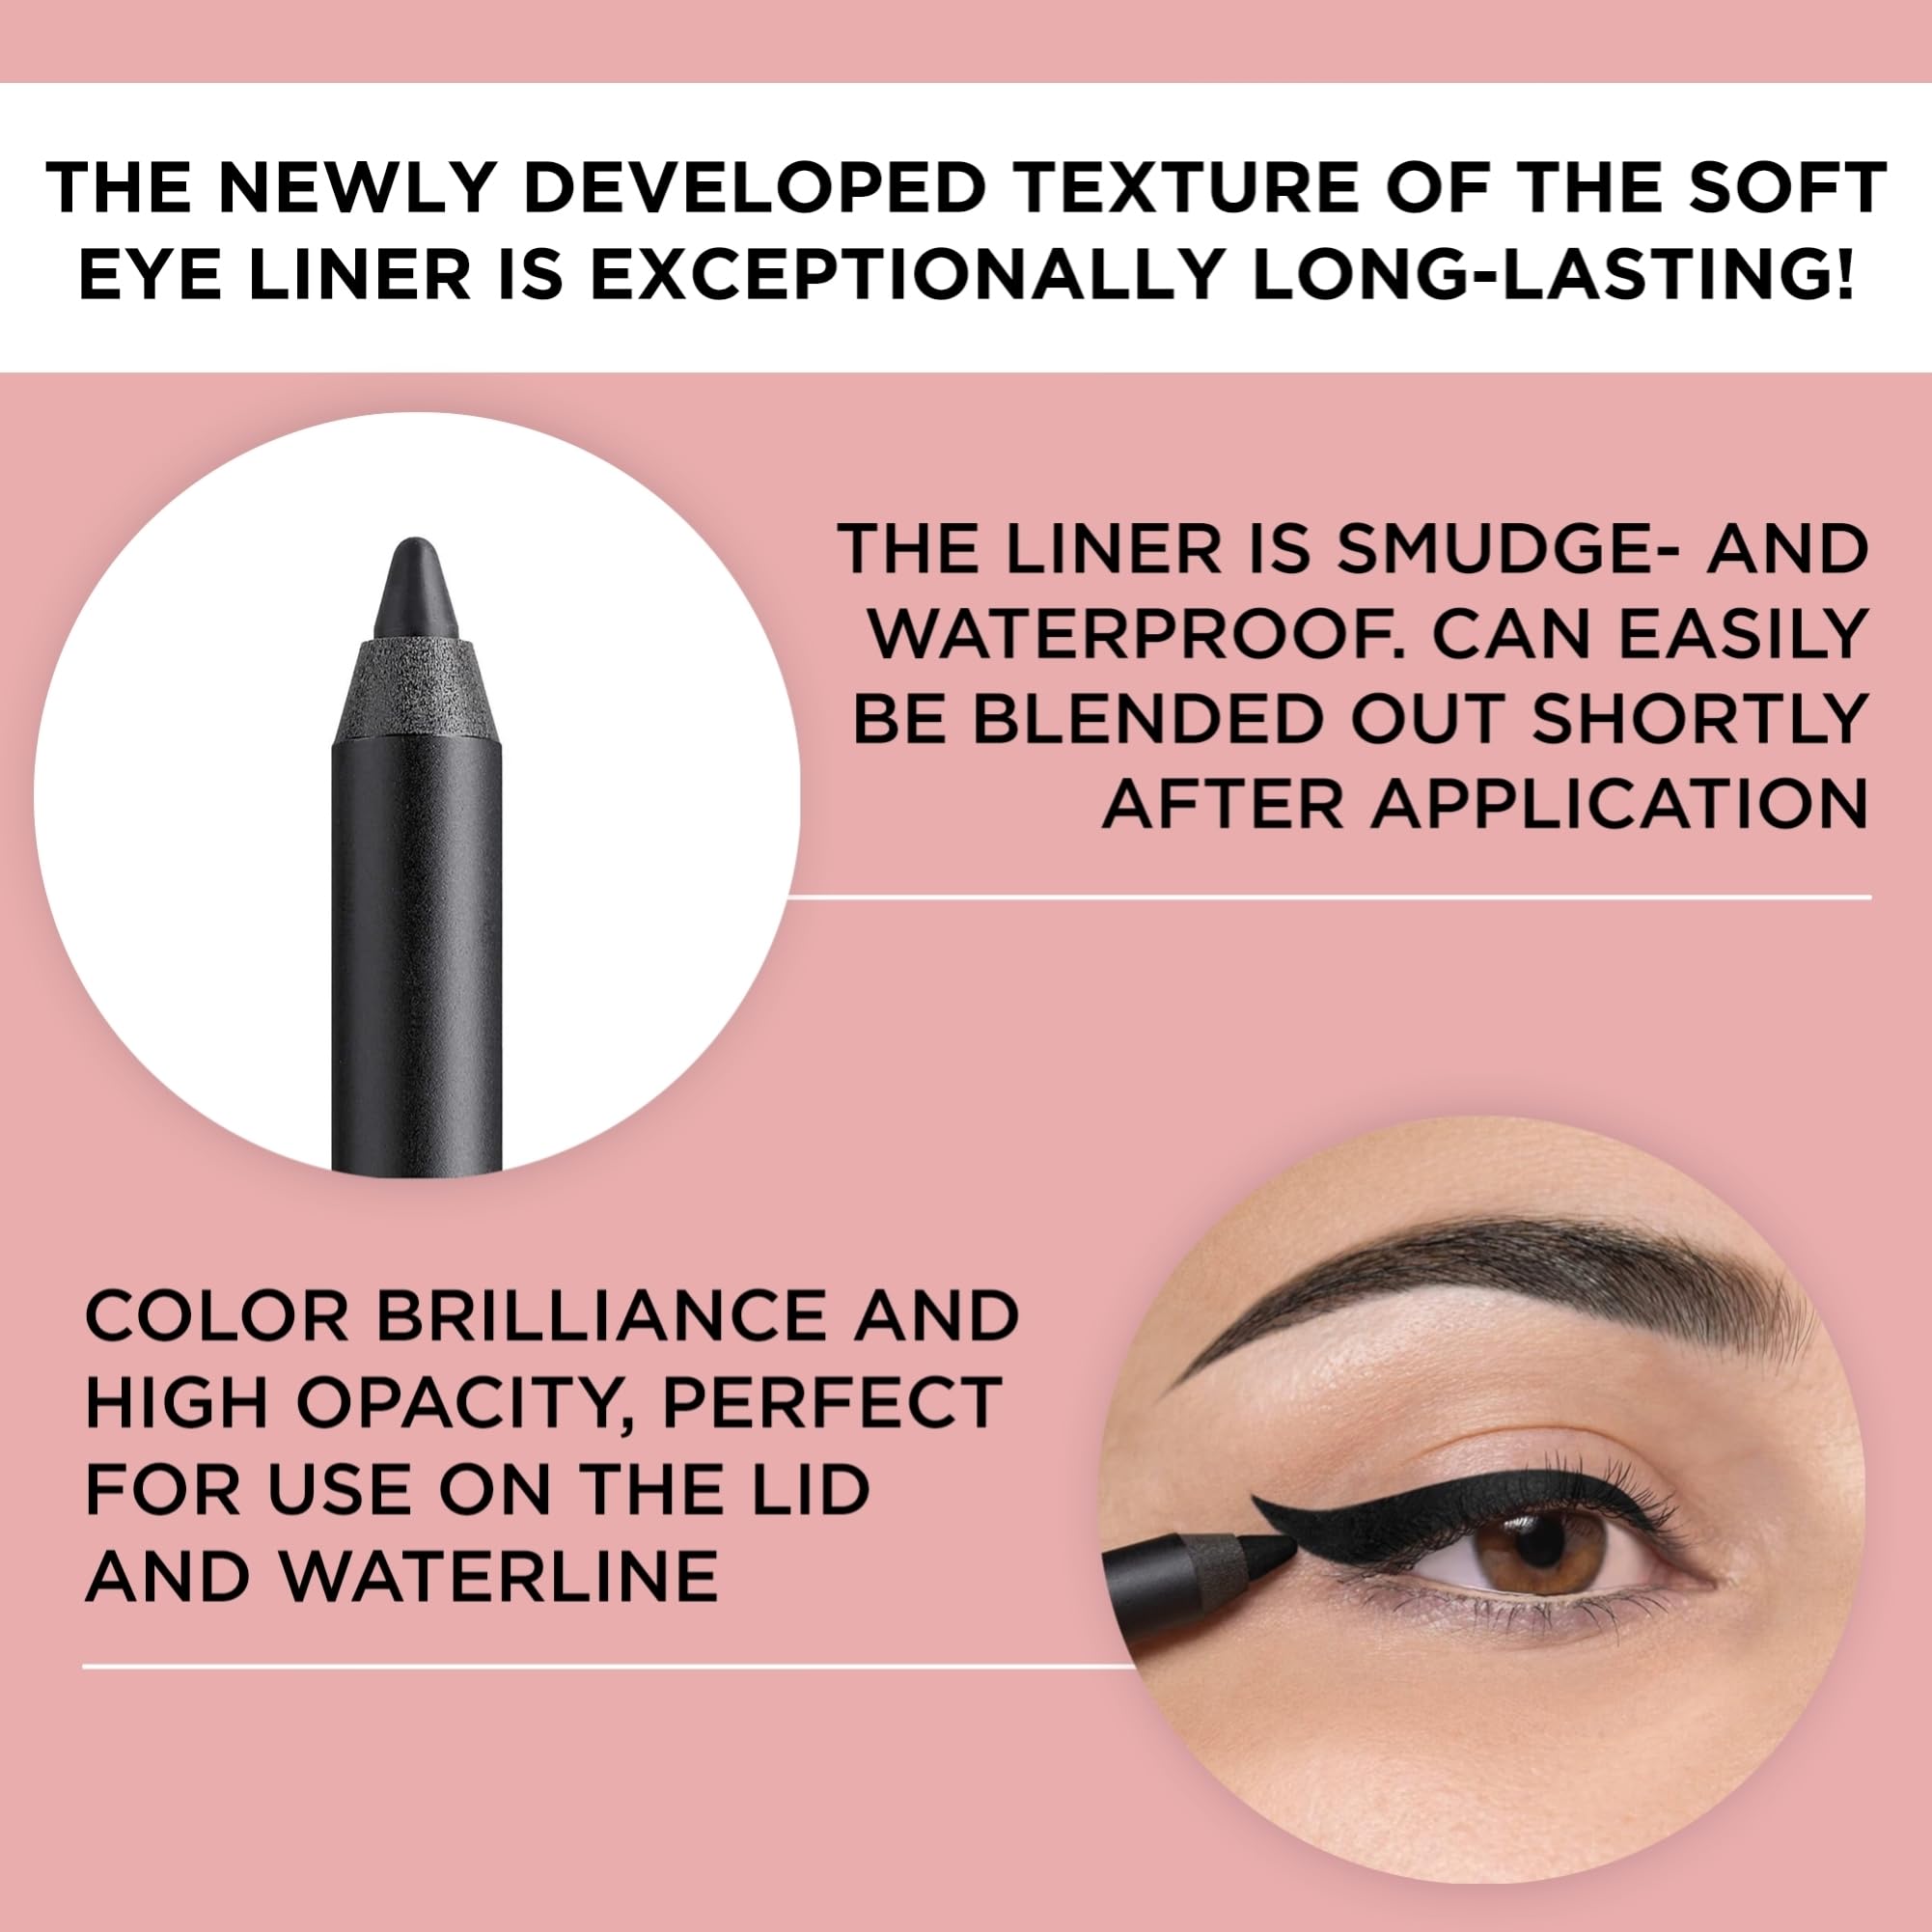 ARTDECO Soft Eyeliner Waterproof - Black N°10 - Creamy Consistency - Glides onto Eye - Smudge-Proof & Waterproof - Long Lasting Wax-Based Formula - Eyeliner Pencil - Eye Makeup - Kajal - 0.04 Oz